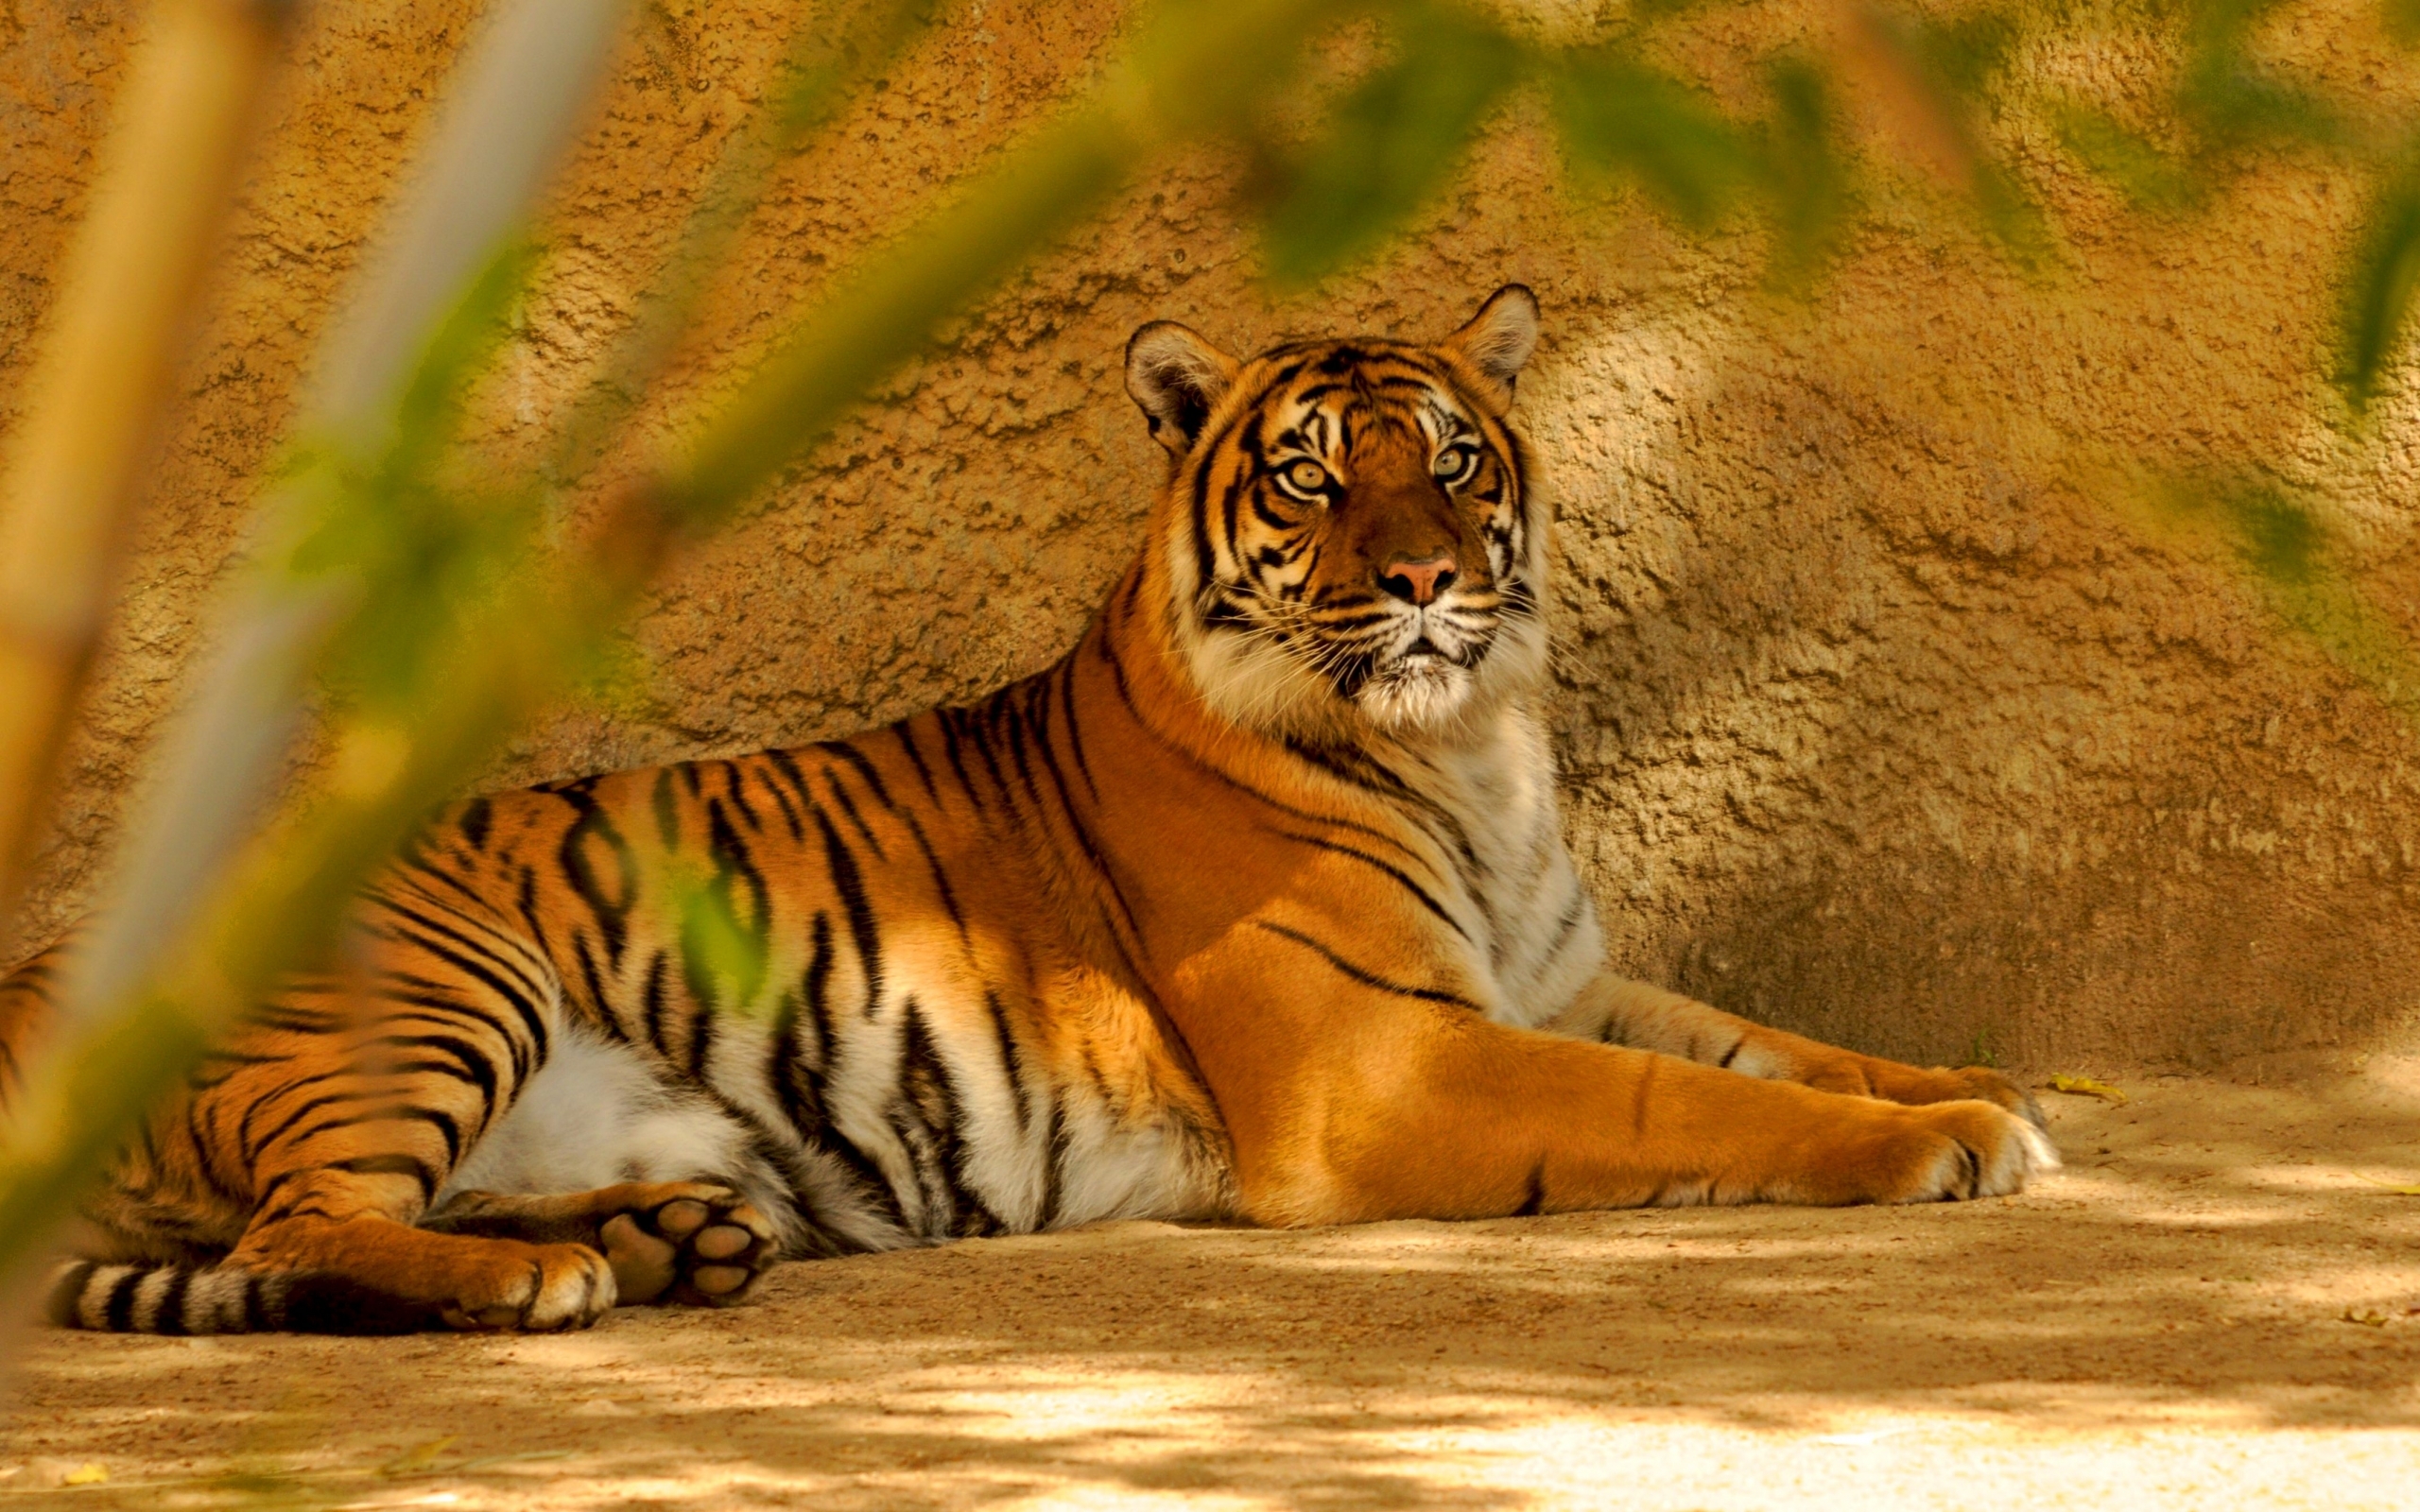 tigers, animals, orange images